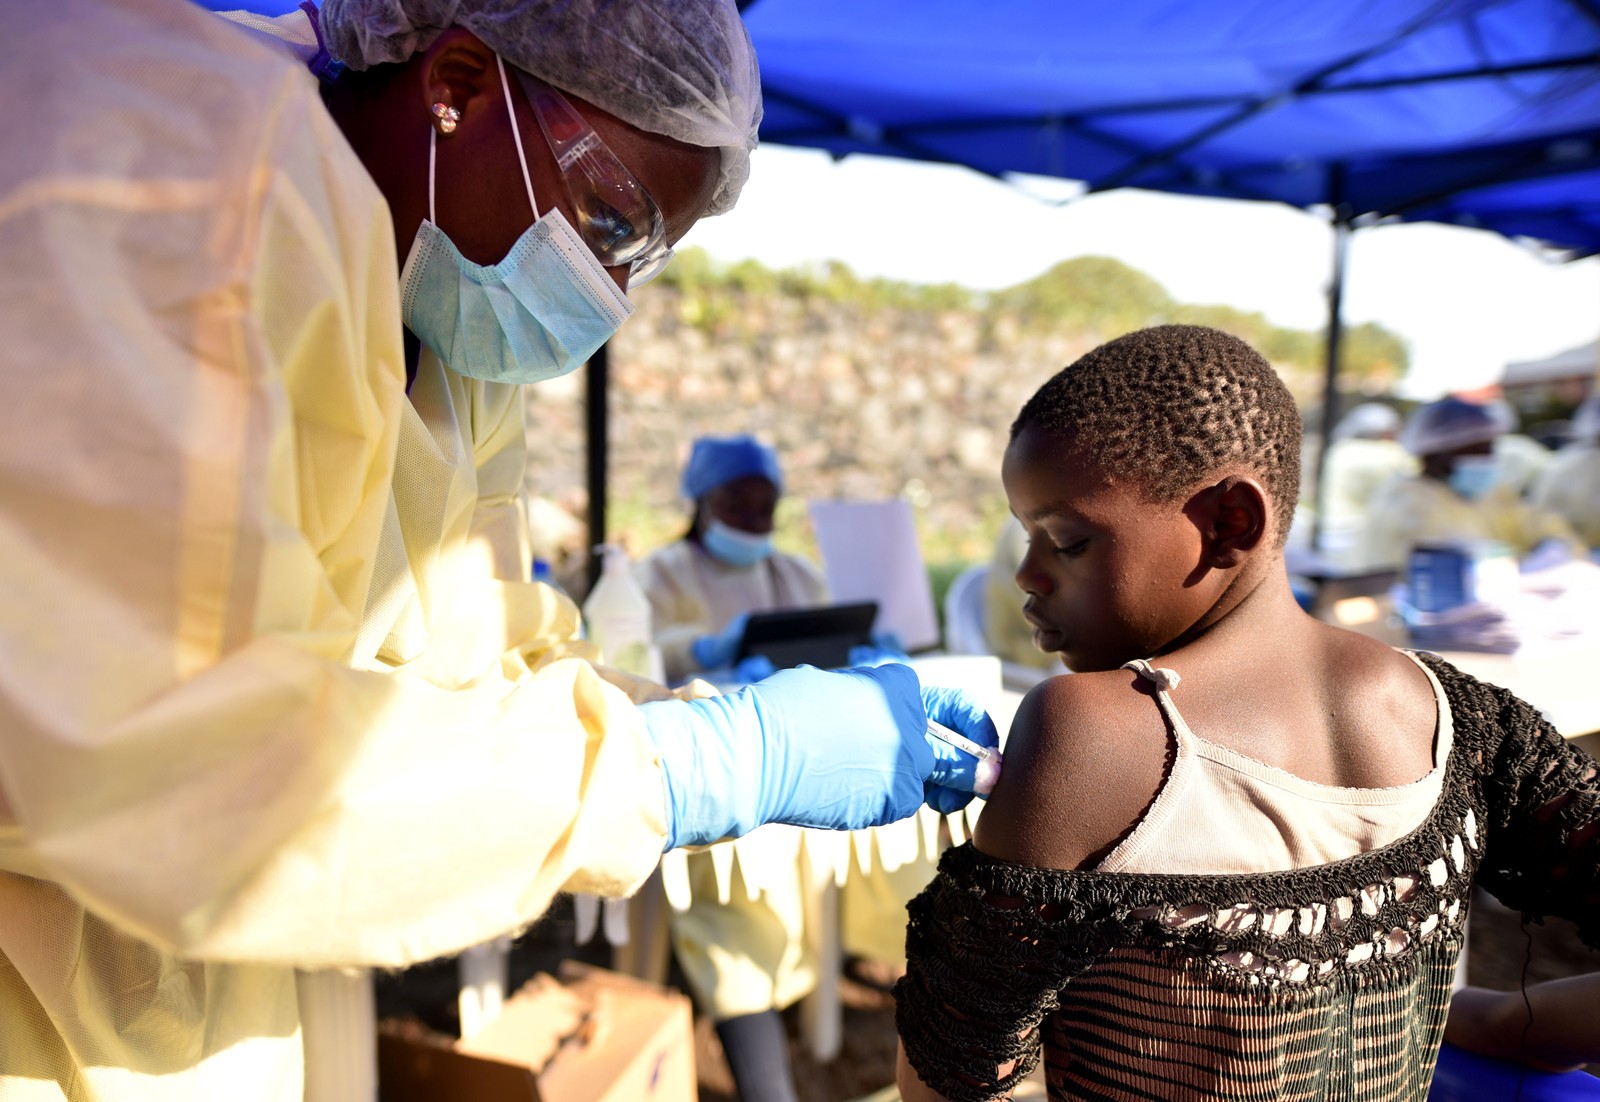 Unicef alerta que crianças no Congo ficaram órfãs devido ao ebola